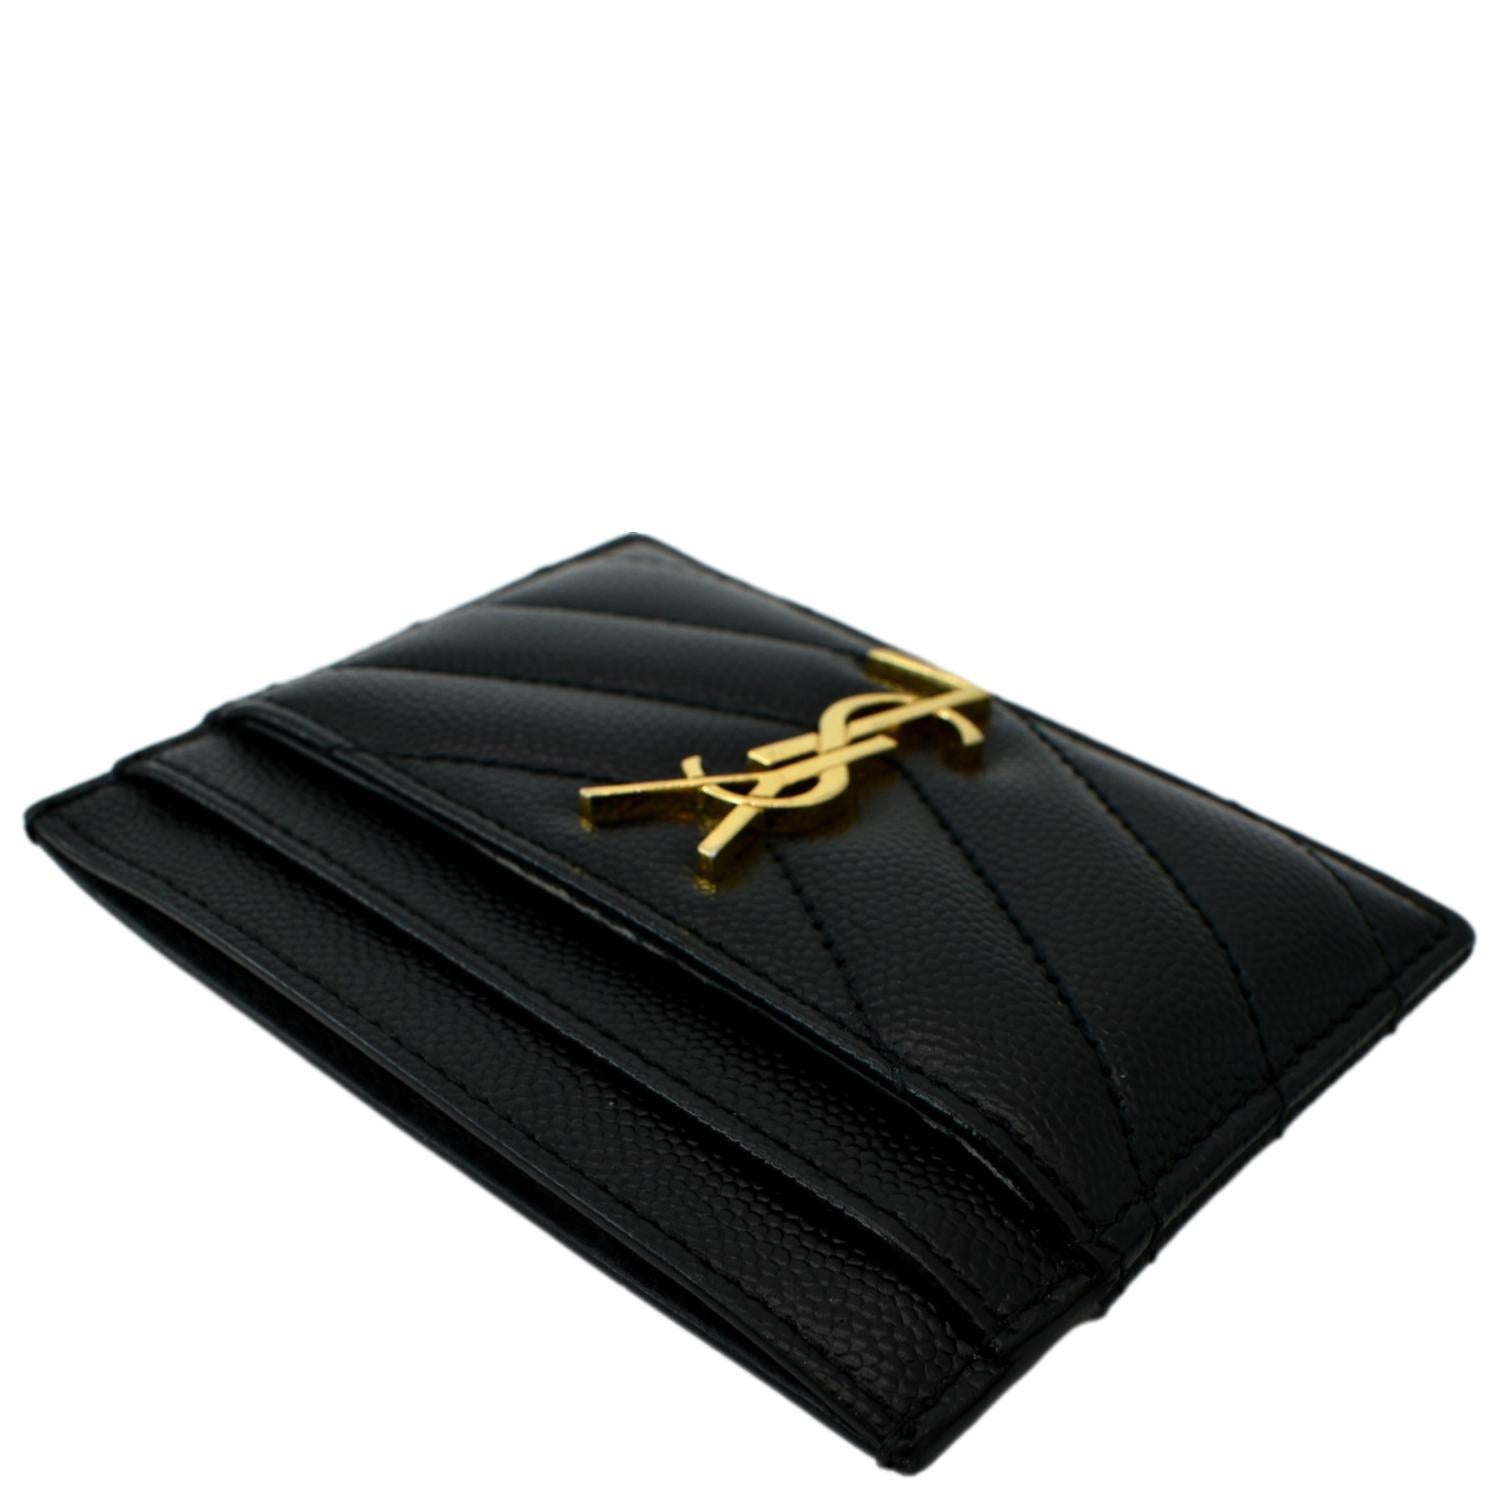 Yves Saint Laurent Monogram Card Case Grain Embossed Leather Black Gold YSL